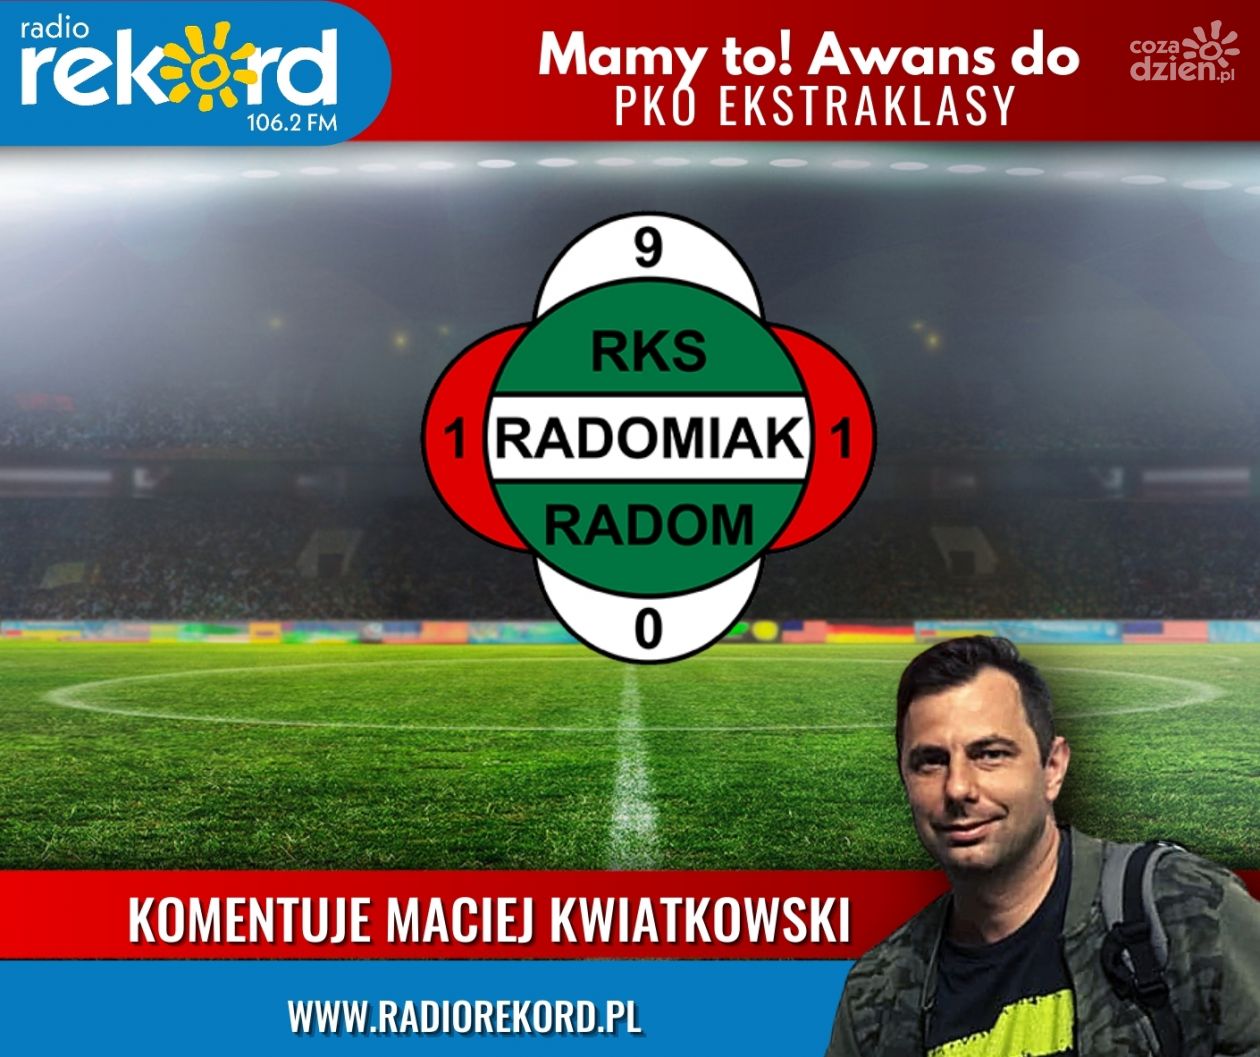 Ostatnie minuty meczu Radomiaka Radom z Koroną na antenie Radia Rekord - posłuchaj relacji!